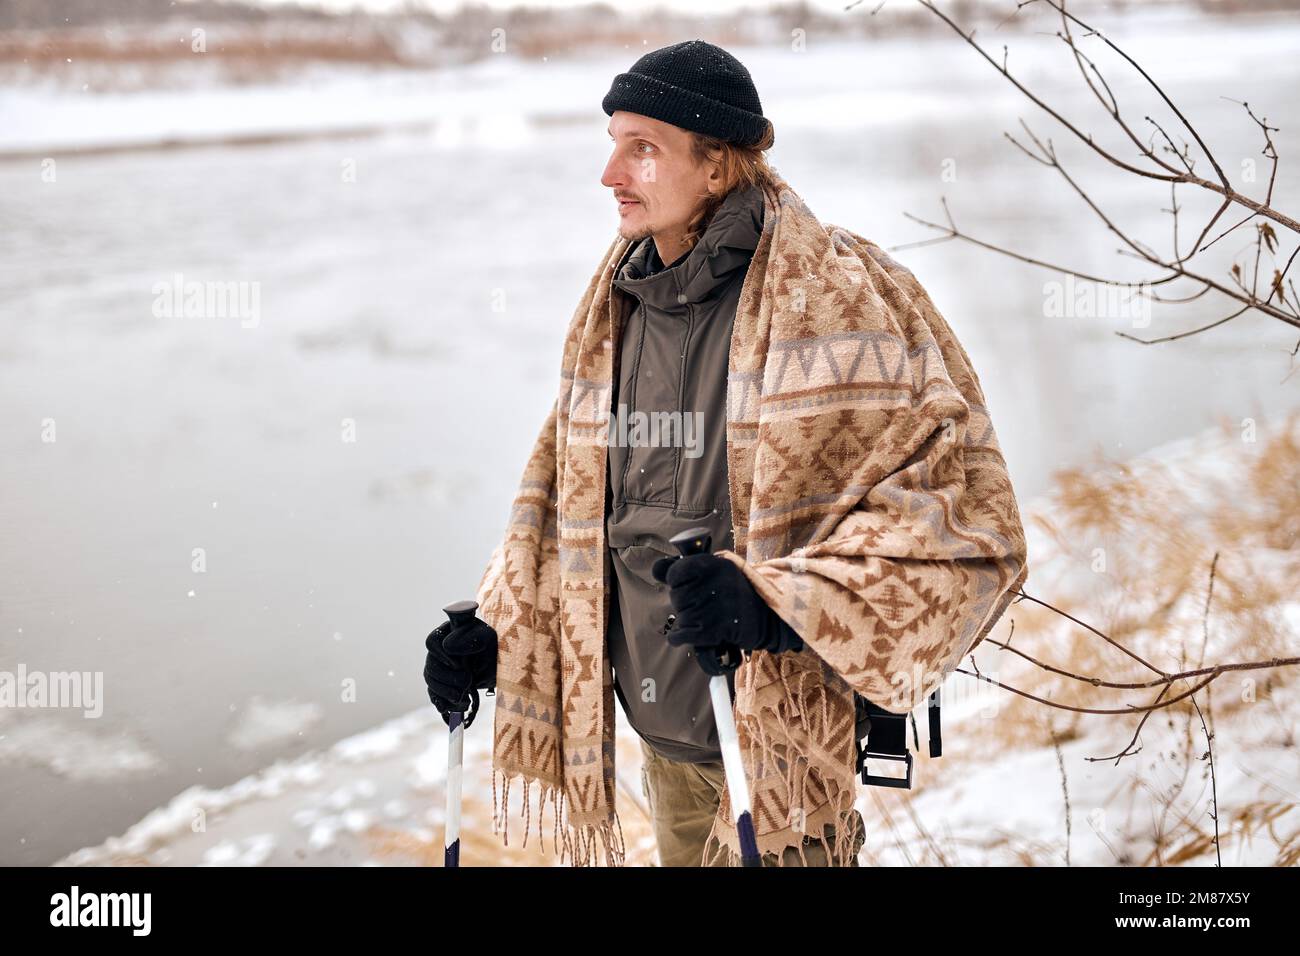 Porträt eines aktiven Mannes mittleren Alters, der im Winterschneewald wandert. Attraktiver Kerl mit Mantel, Schal und Hut, der zur Seite schaut und sich ausruht. Wintermonat Stockfoto